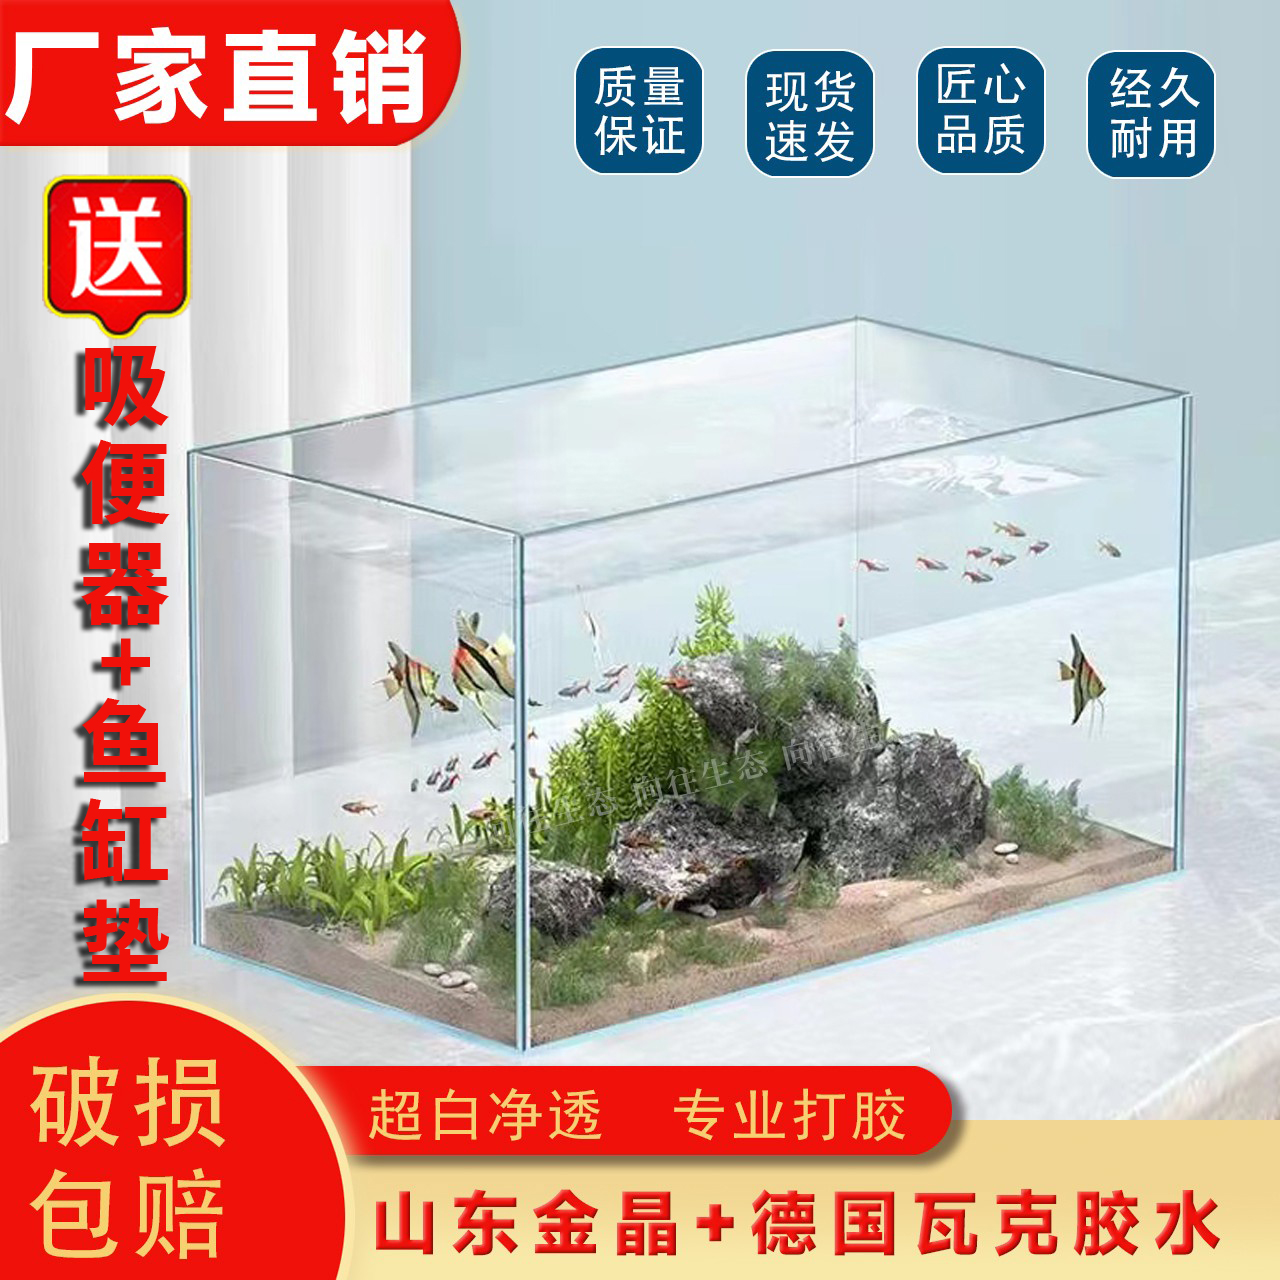 山东金晶五线超白玻璃客厅家用办公桌生态鱼缸金鱼缸乌龟缸造景